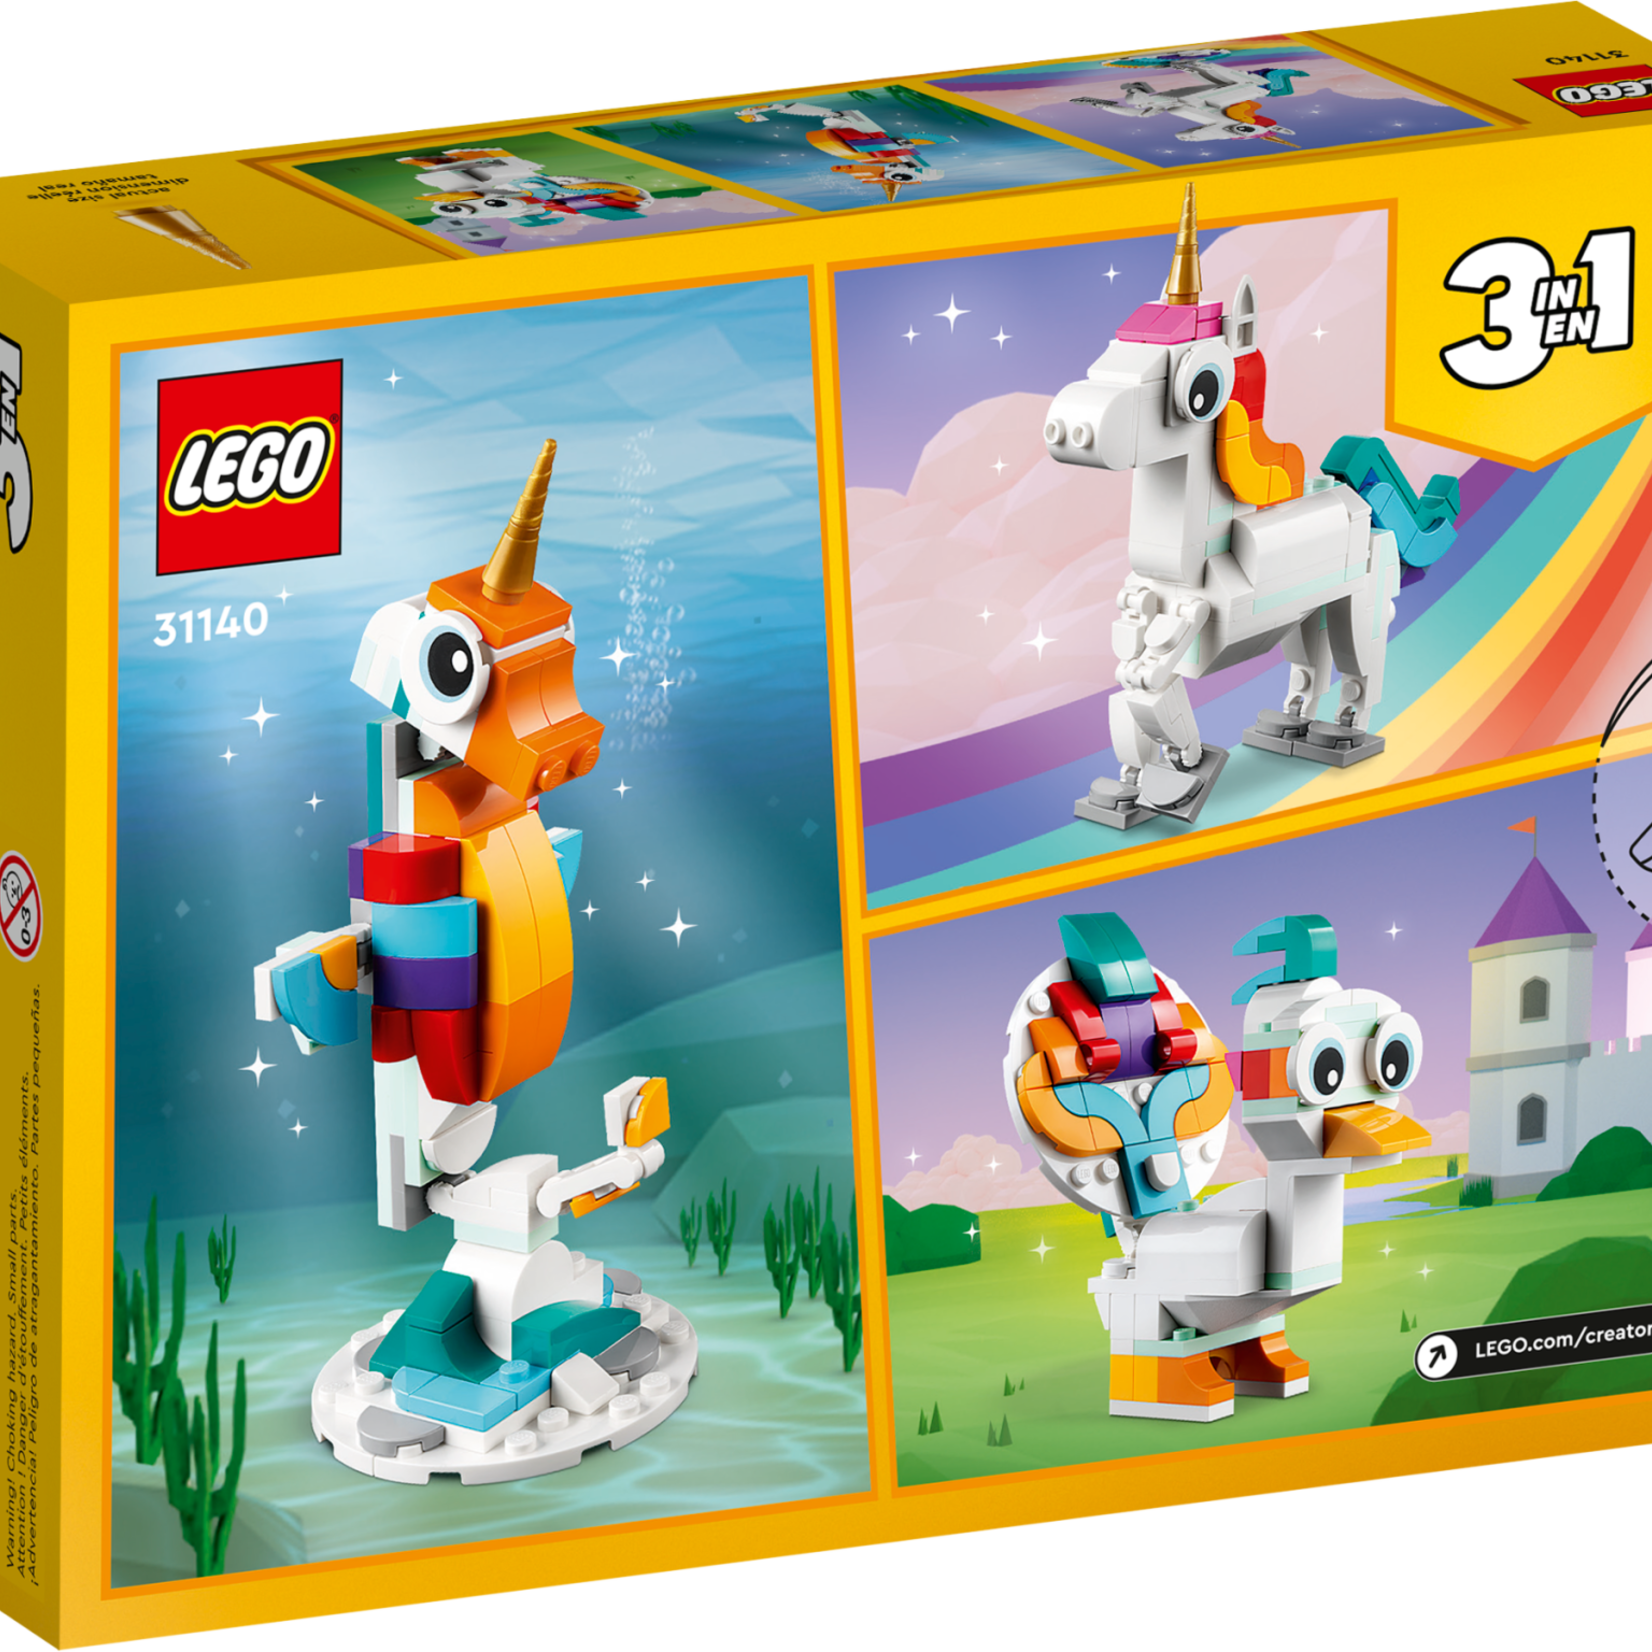 Lego Lego 31140 Creator - La licorne magique